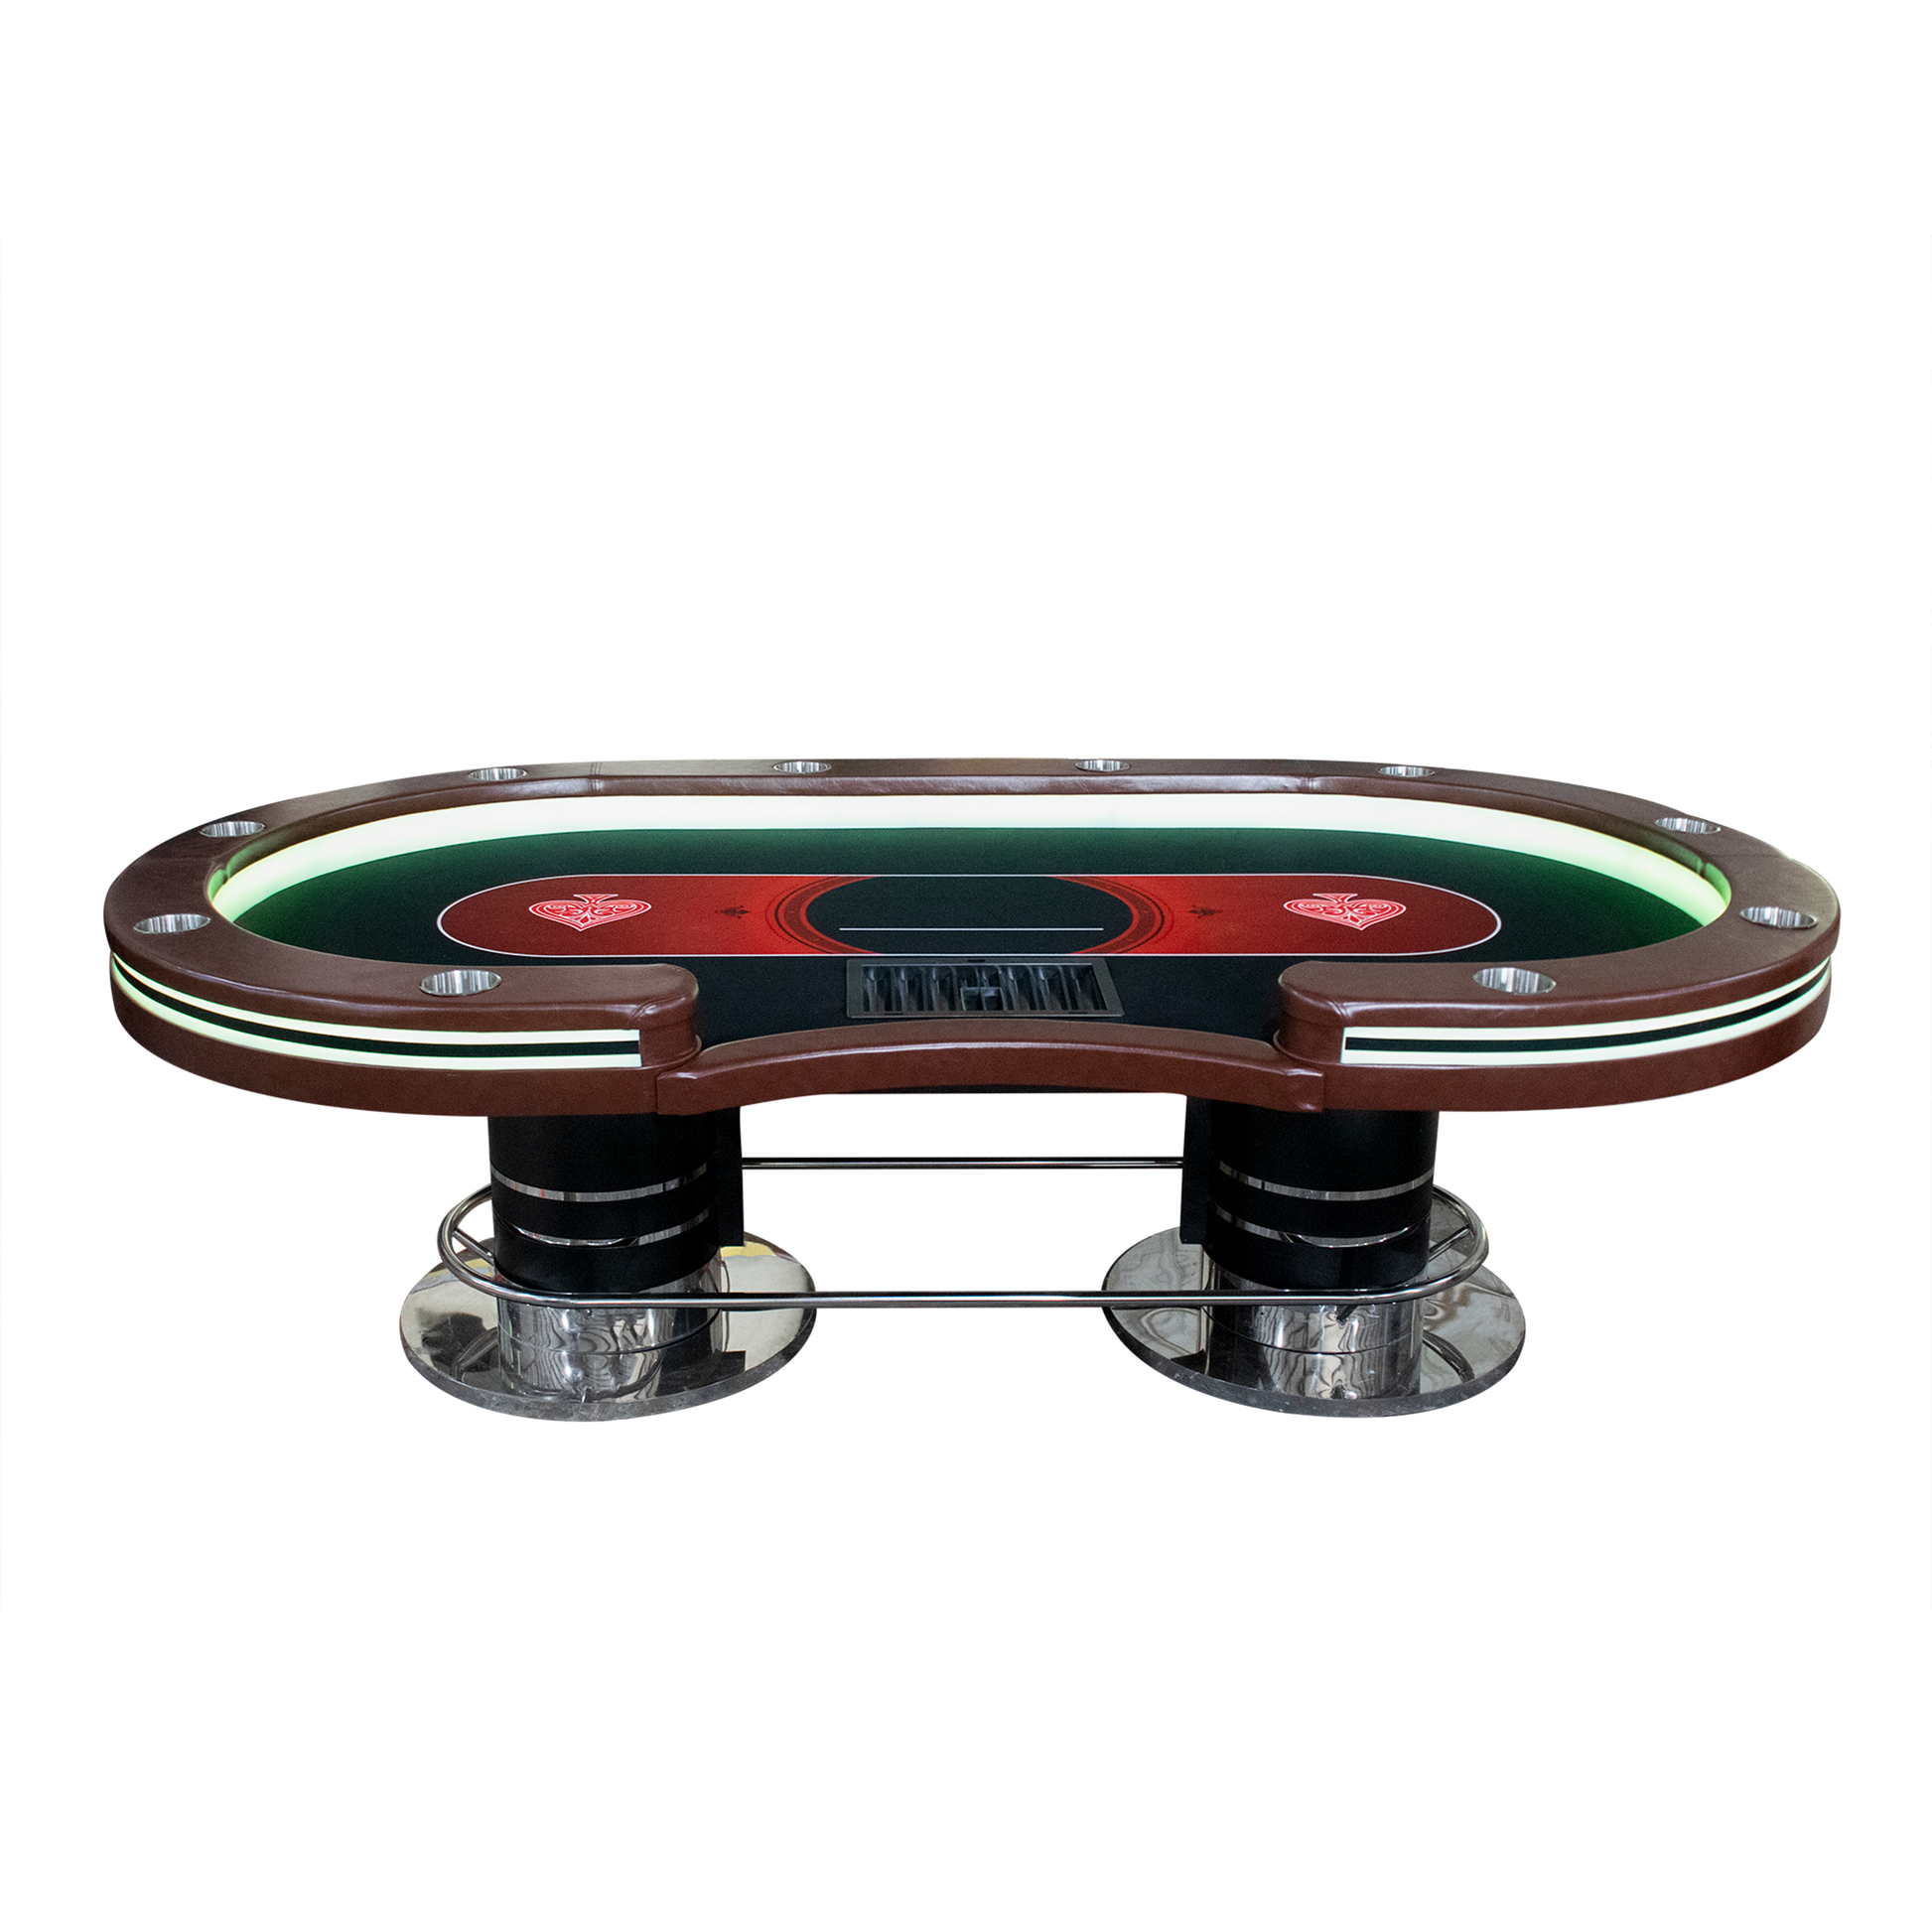 LEDテキサスポーカーテーブル[ダブルモデル] – pokergoods